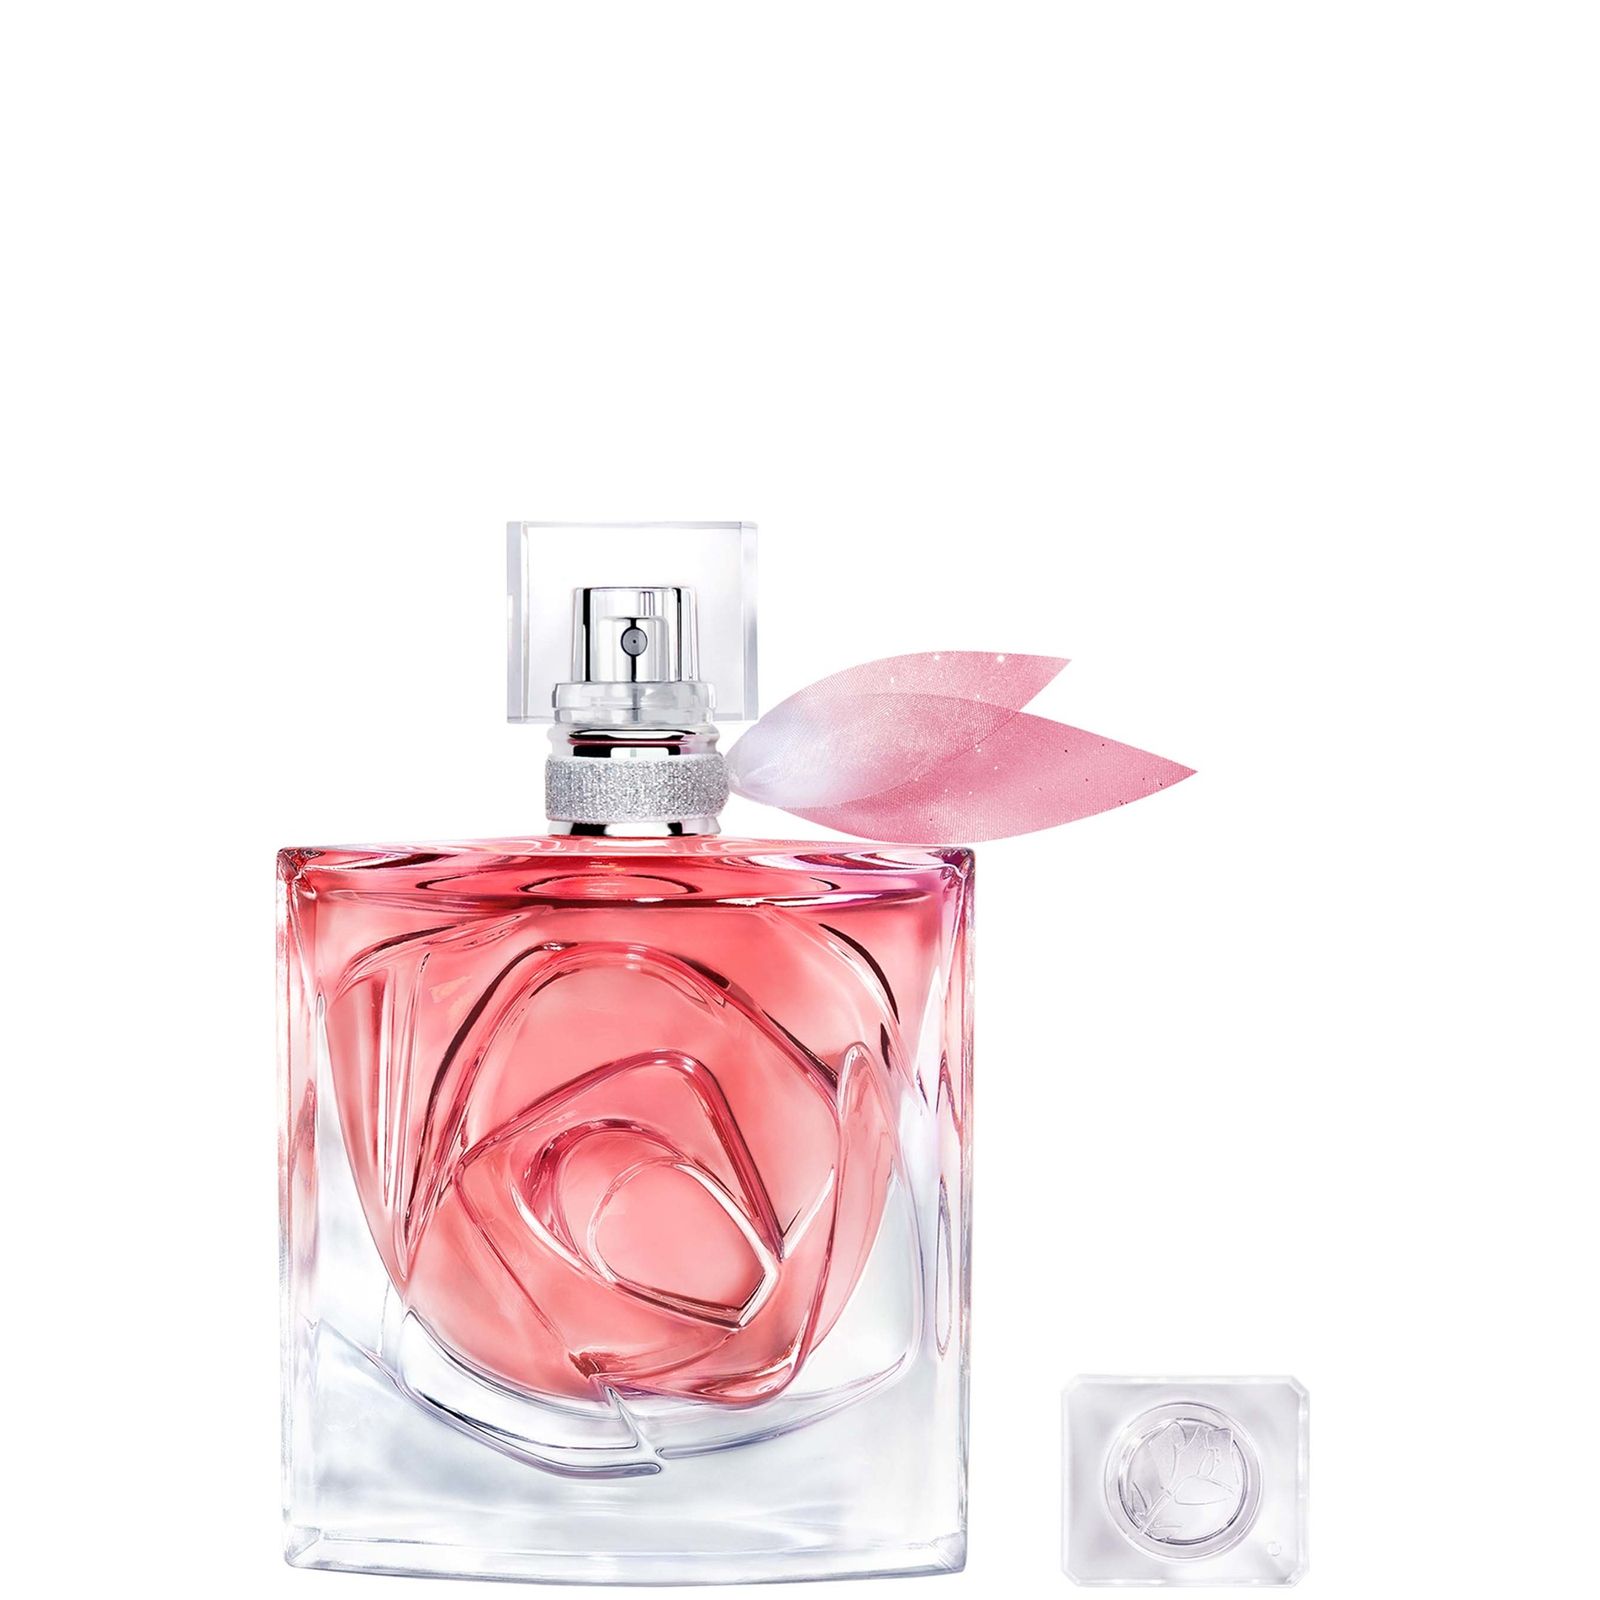 Lancôme La Vie est Belle Rose Extraordinaire Eau de parfum spray 50 ml